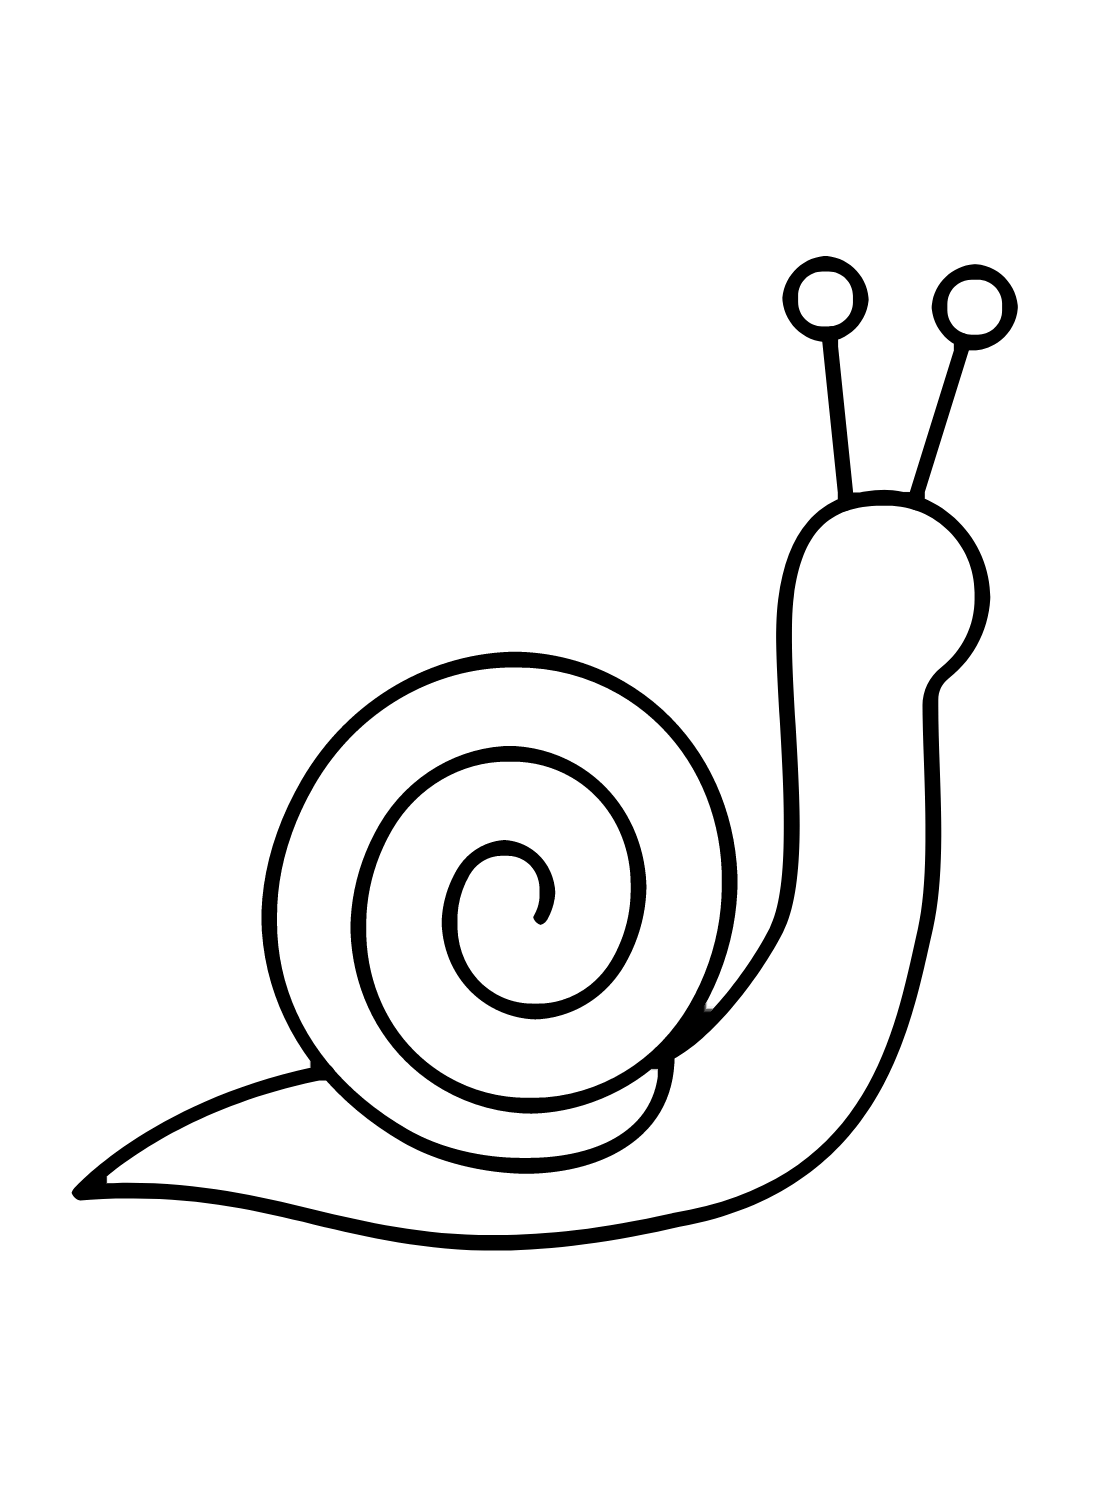 Teken een gemakkelijke slak van een slak